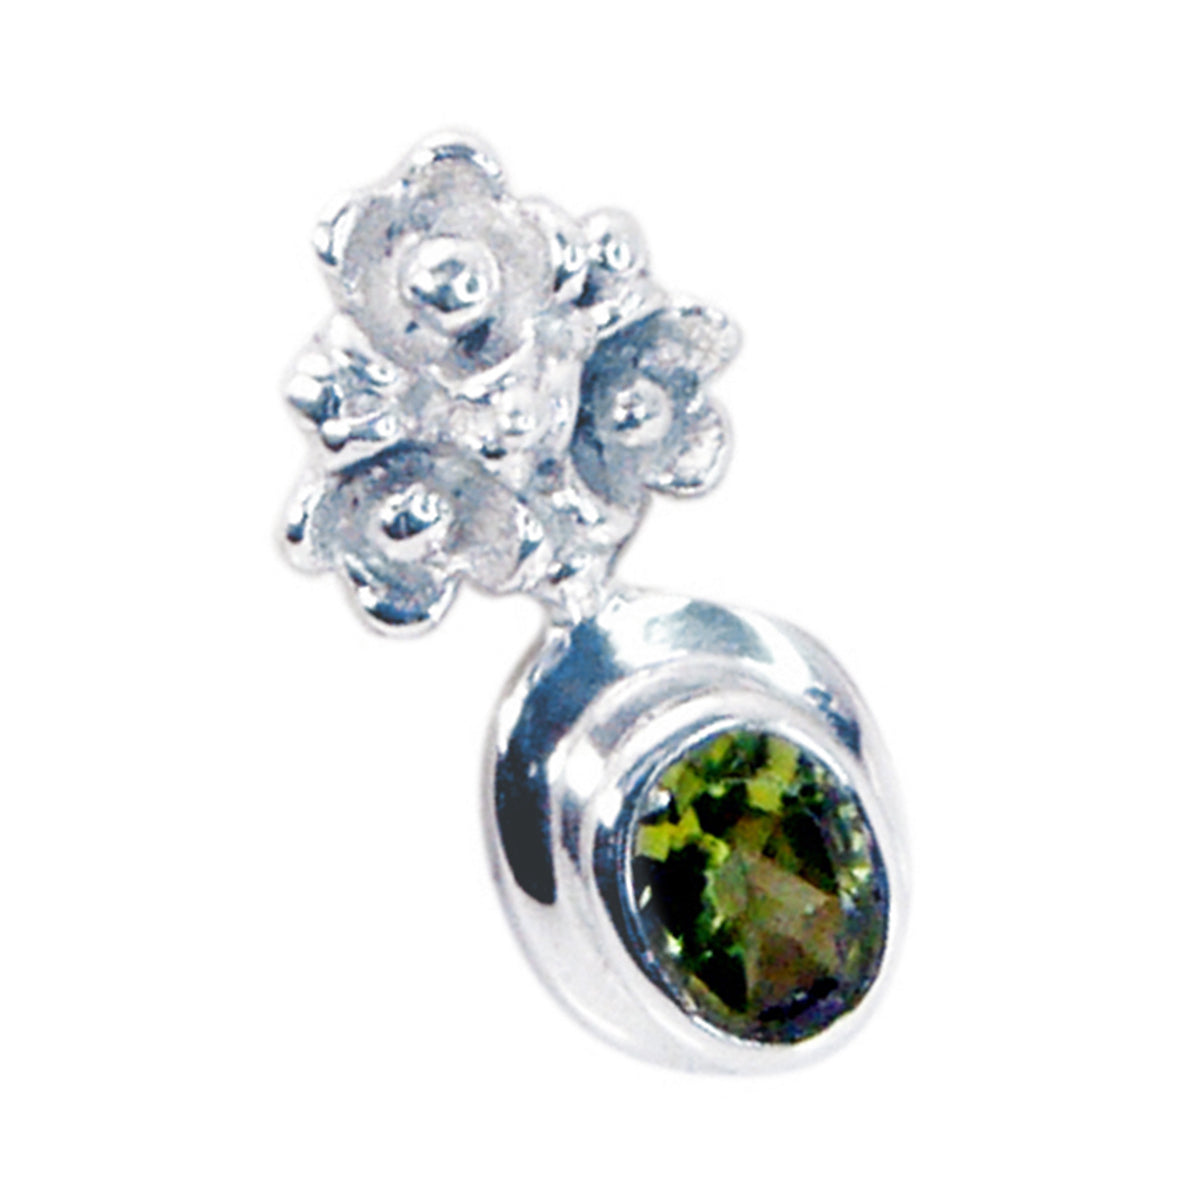 riyo graziose gemme ciondolo in argento con peridoto verde sfaccettato ovale, regalo per moglie